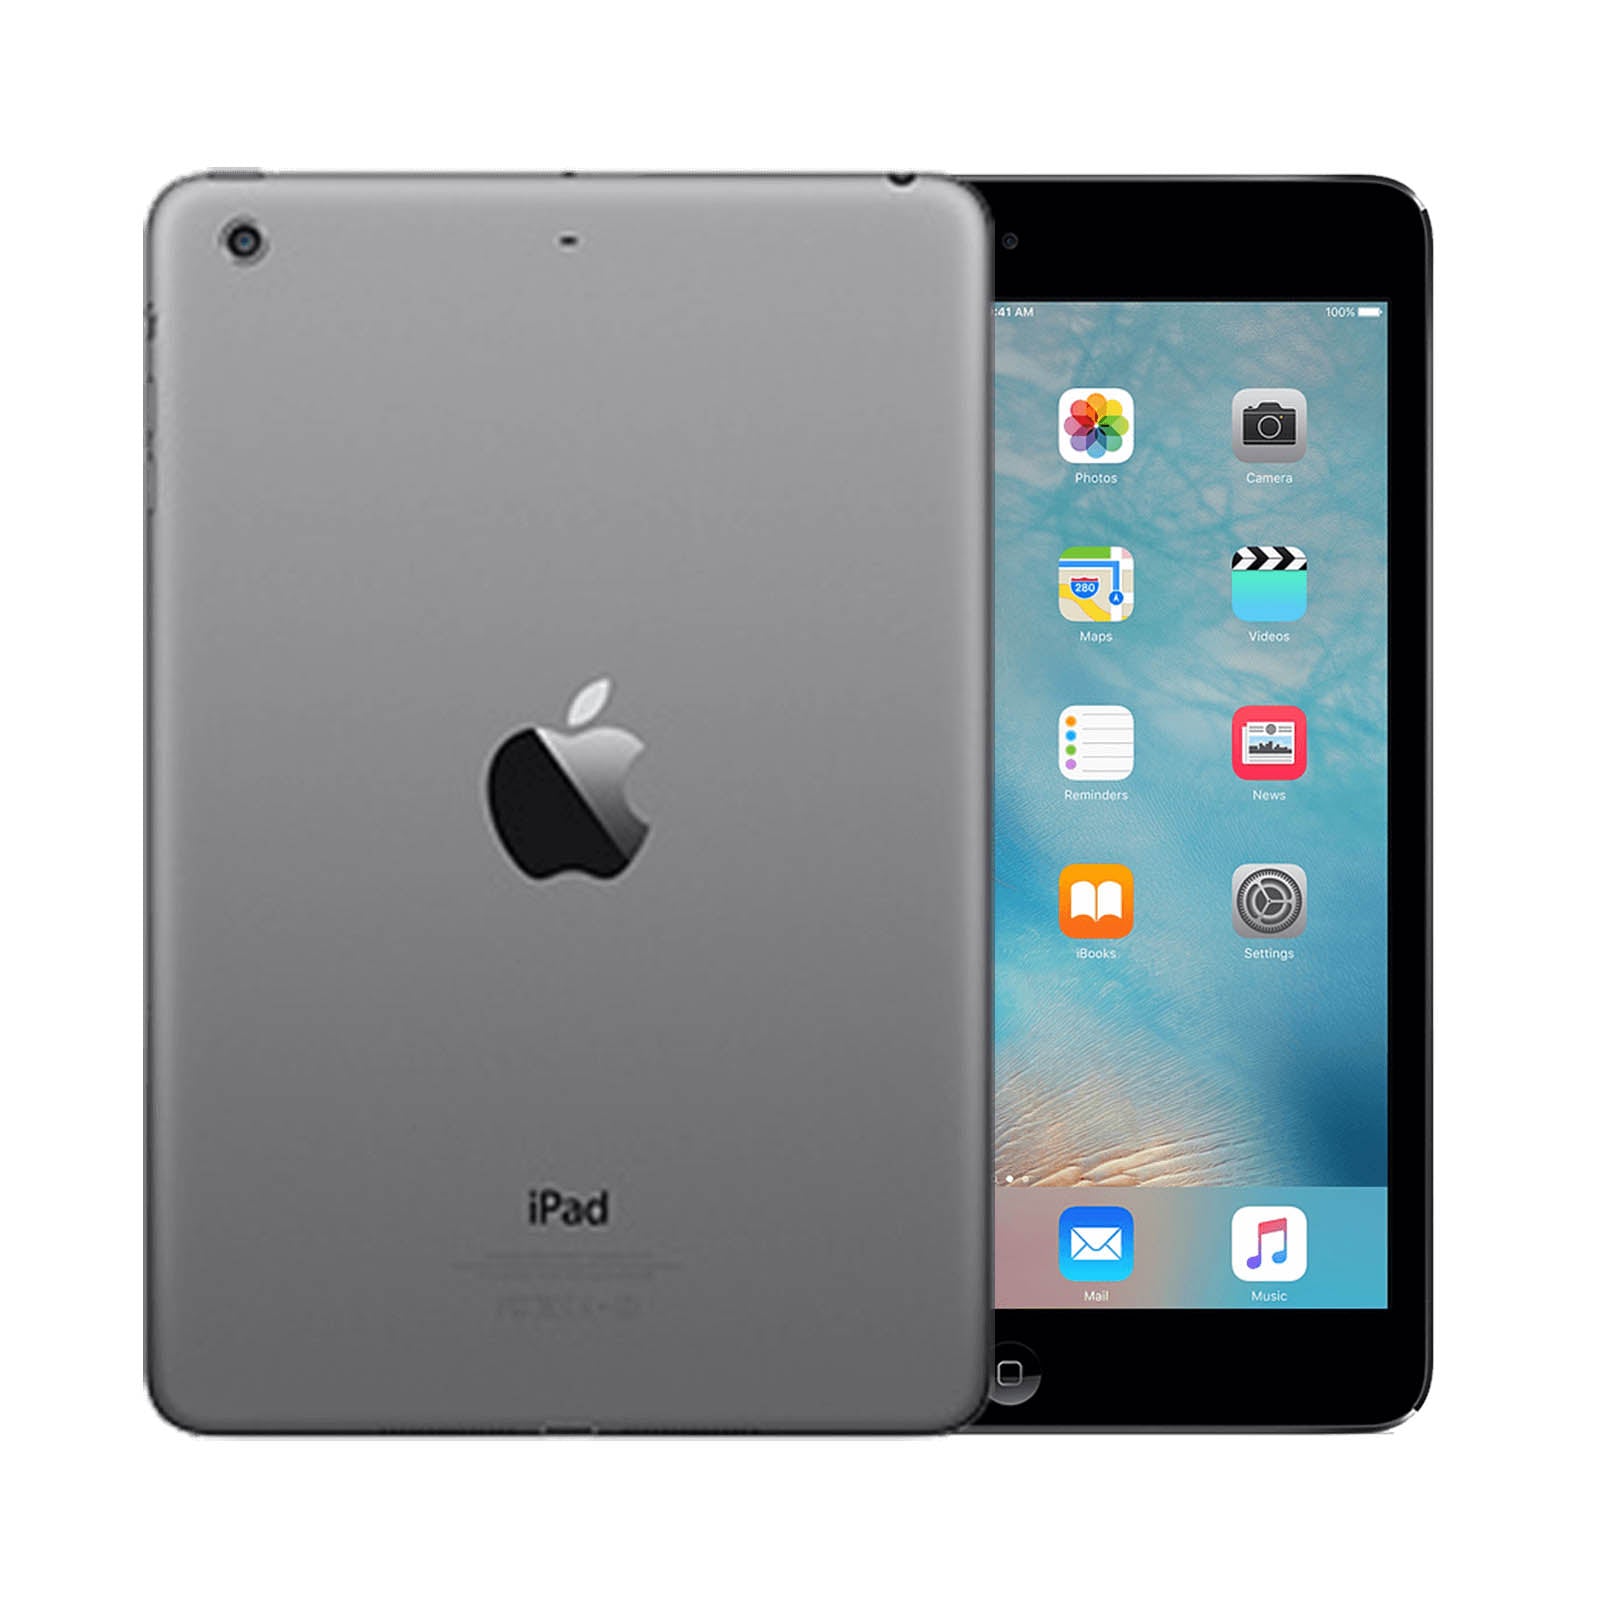 iPad Mini 2 32GB WiFi -Space Grey -Very Good 32GB Space Grey Very Good